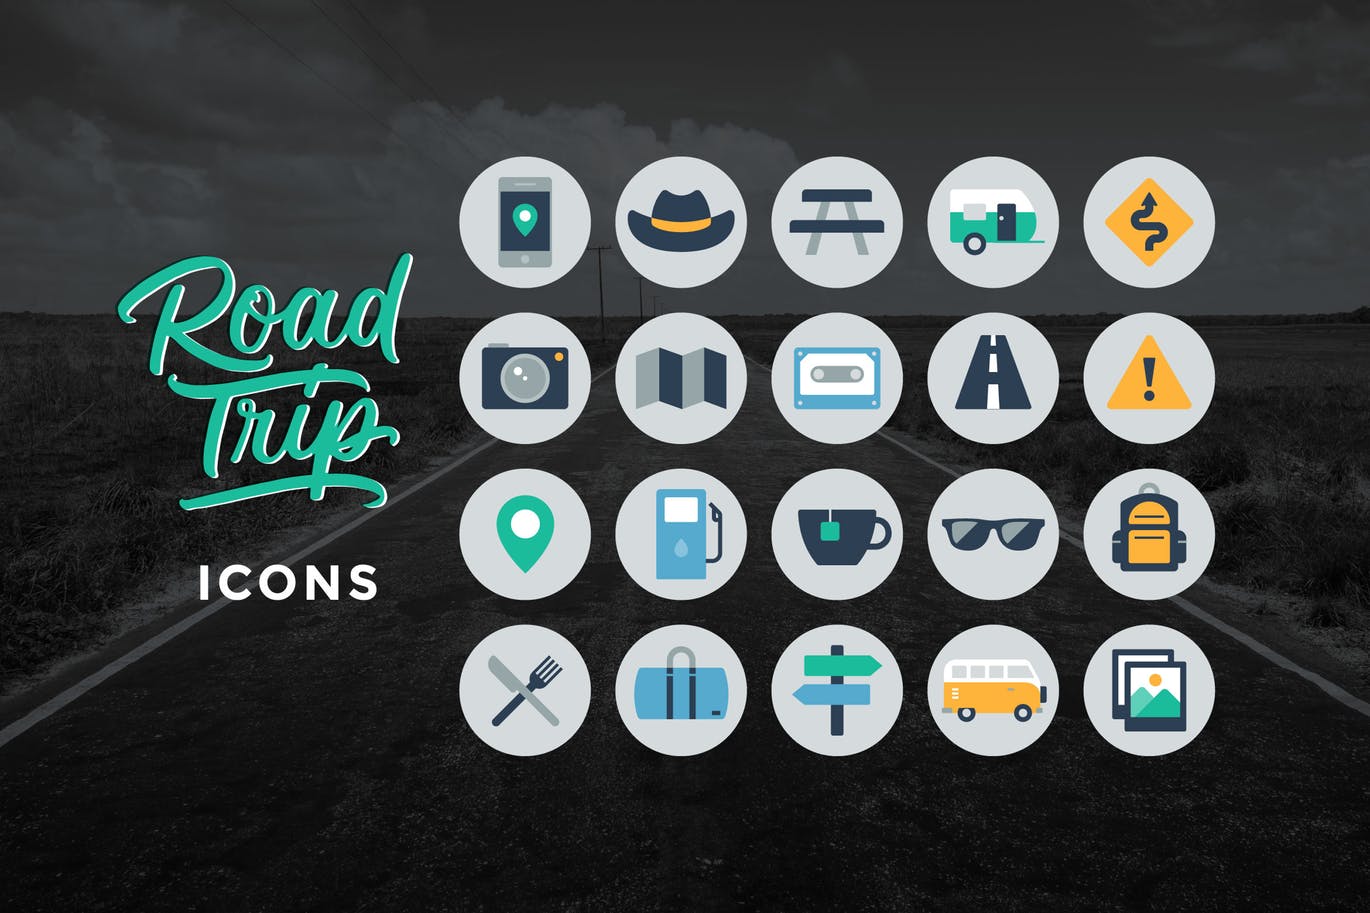 公路旅行主题圆形矢量16设计素材网精选图标 Road Trip Icons插图